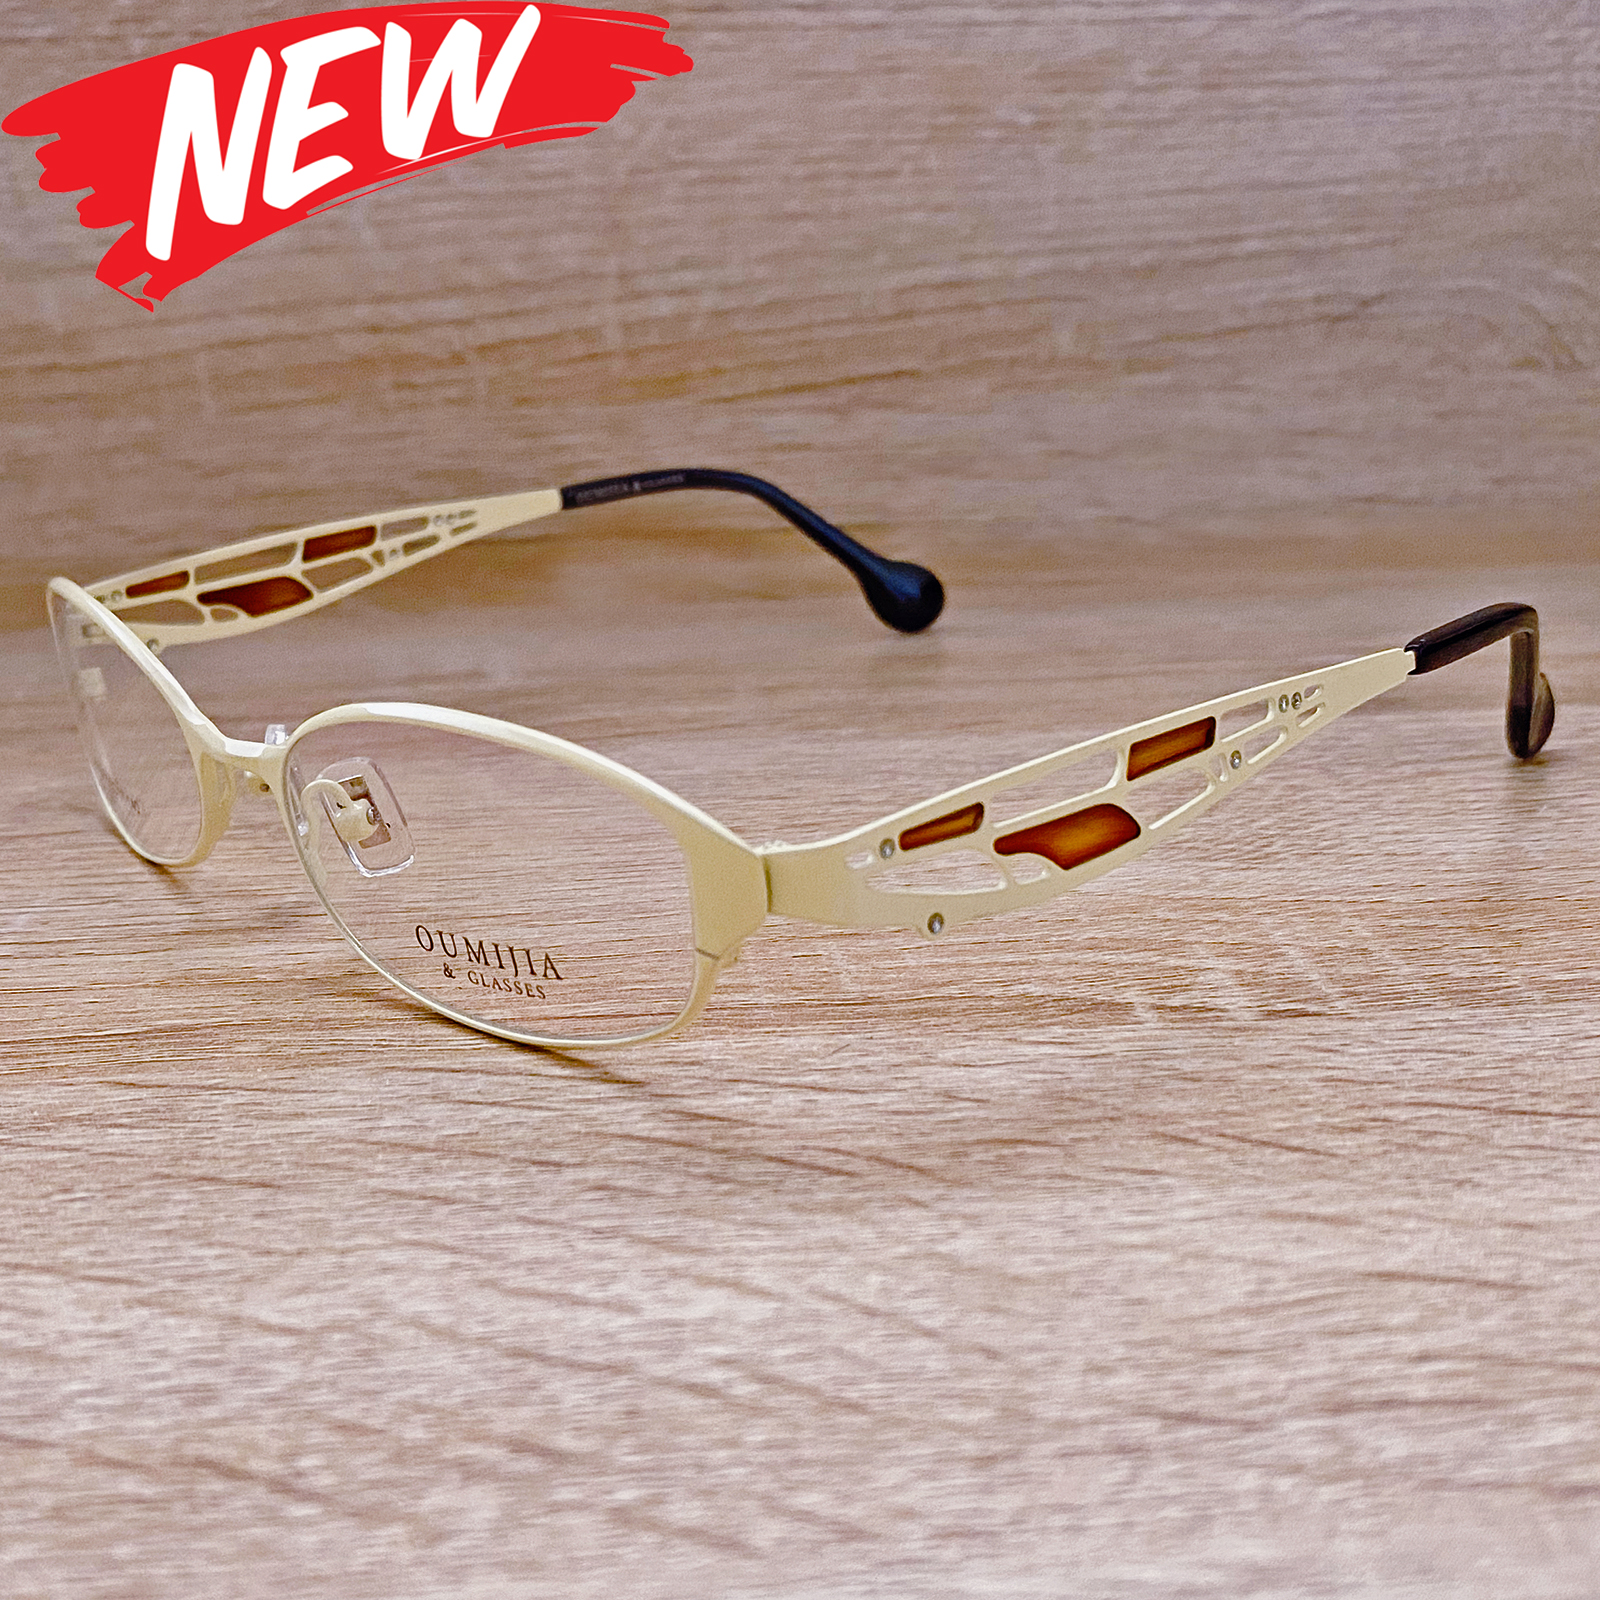 กรอบแว่นตา สำหรับตัดเลนส์ แว่นตา Fashion รุ่น 6631 สีครีม กรอบเต็ม ทรงสวย ขาข้อต่อ วัสดุ สแตนเลส สตีล